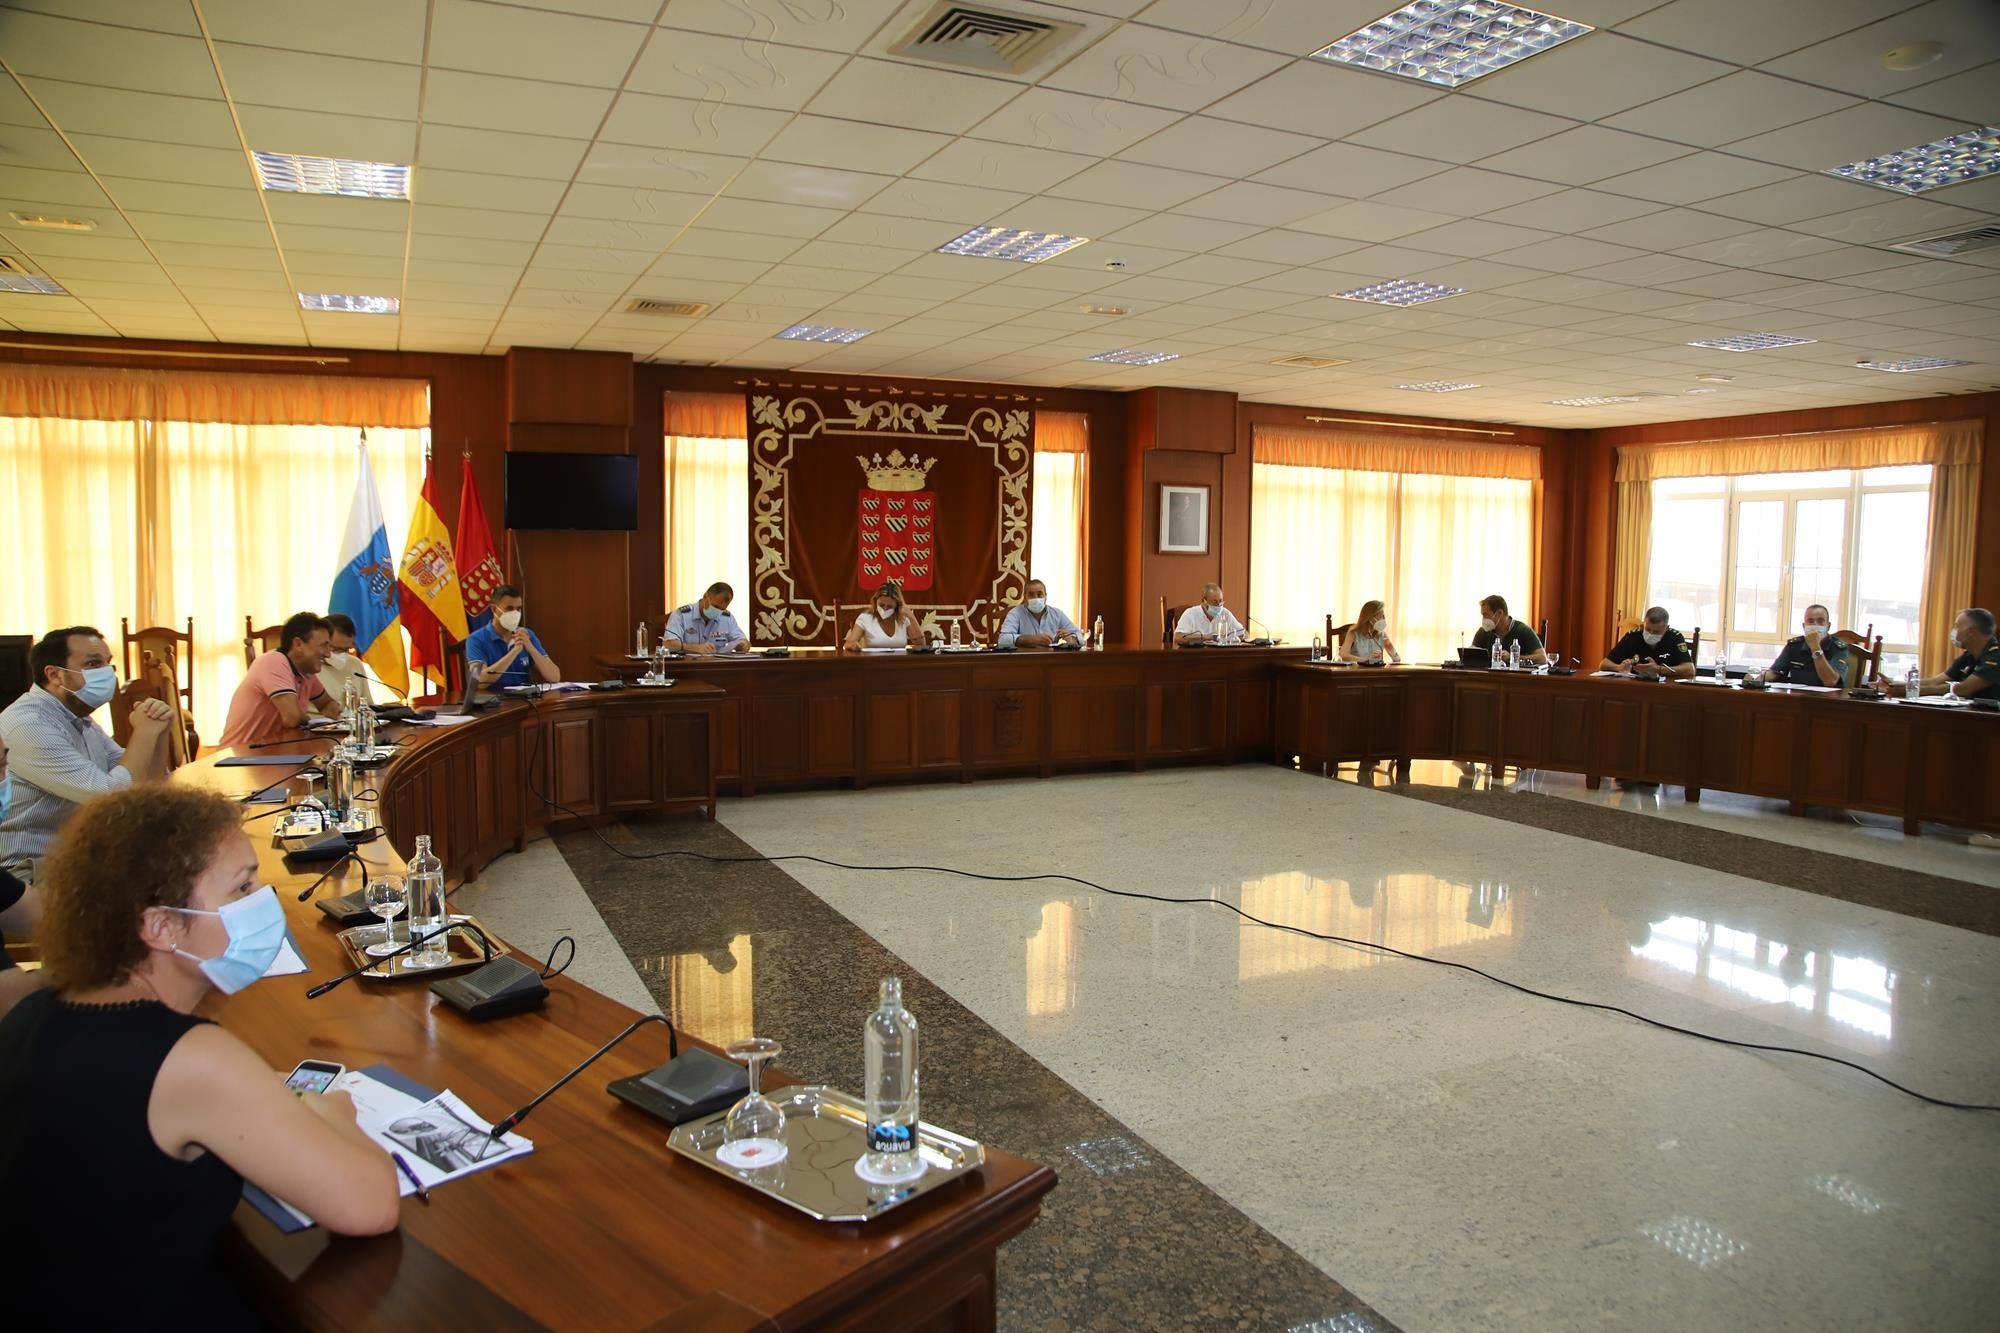 Image de la reunión en la que se ha aprobado el protocolo ante posibles casos sospechosos de coronavirus